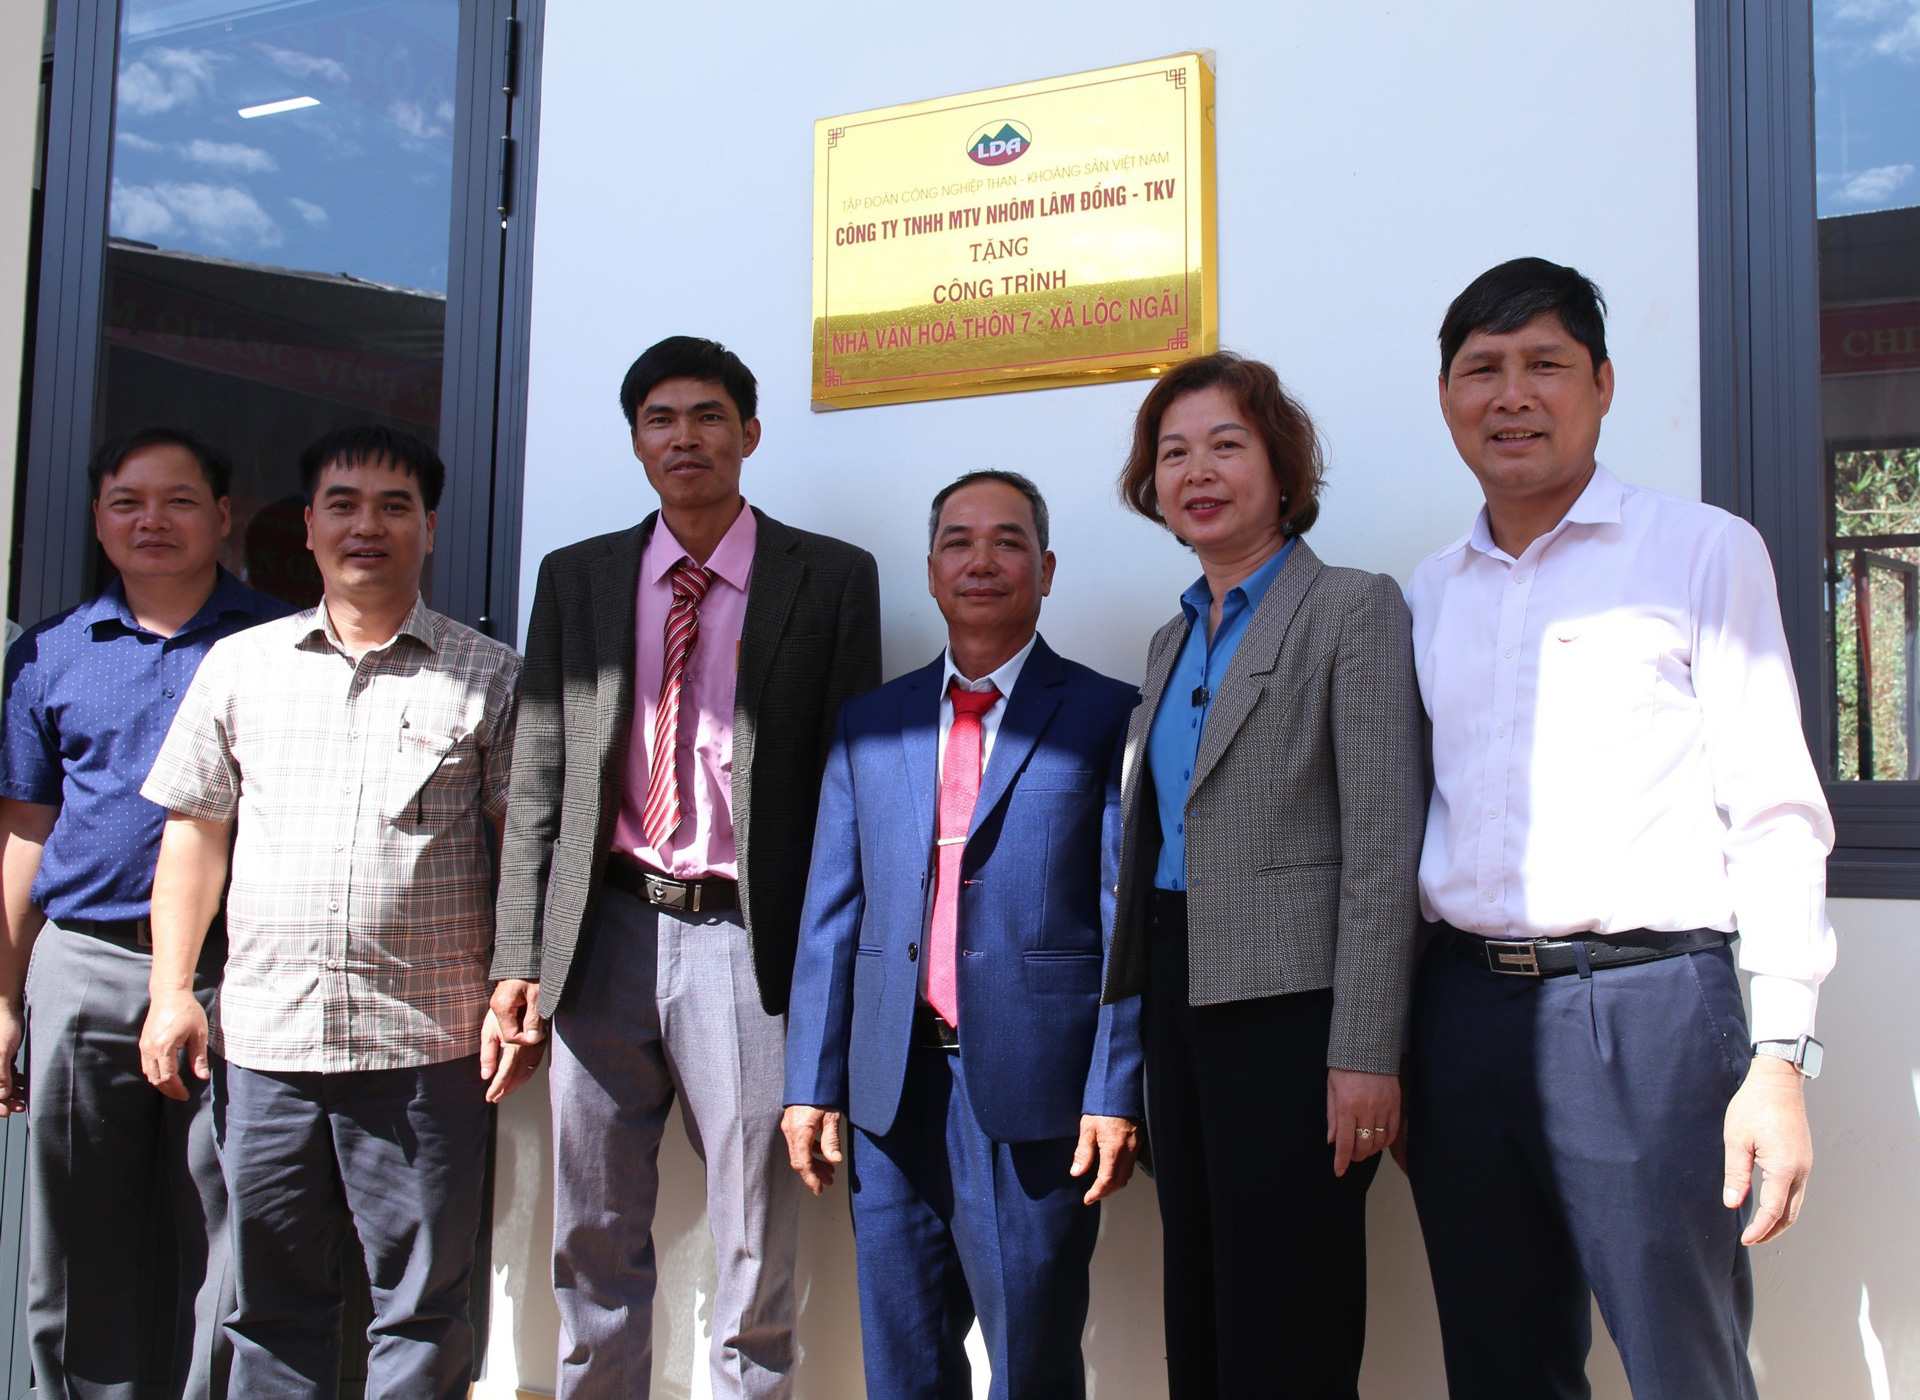 Lãnh đạo Công ty Nhôm lâm Đồng - TKV trao tặng Nhà văn hóa cho Thôn 7, xã Lộc Ngãi